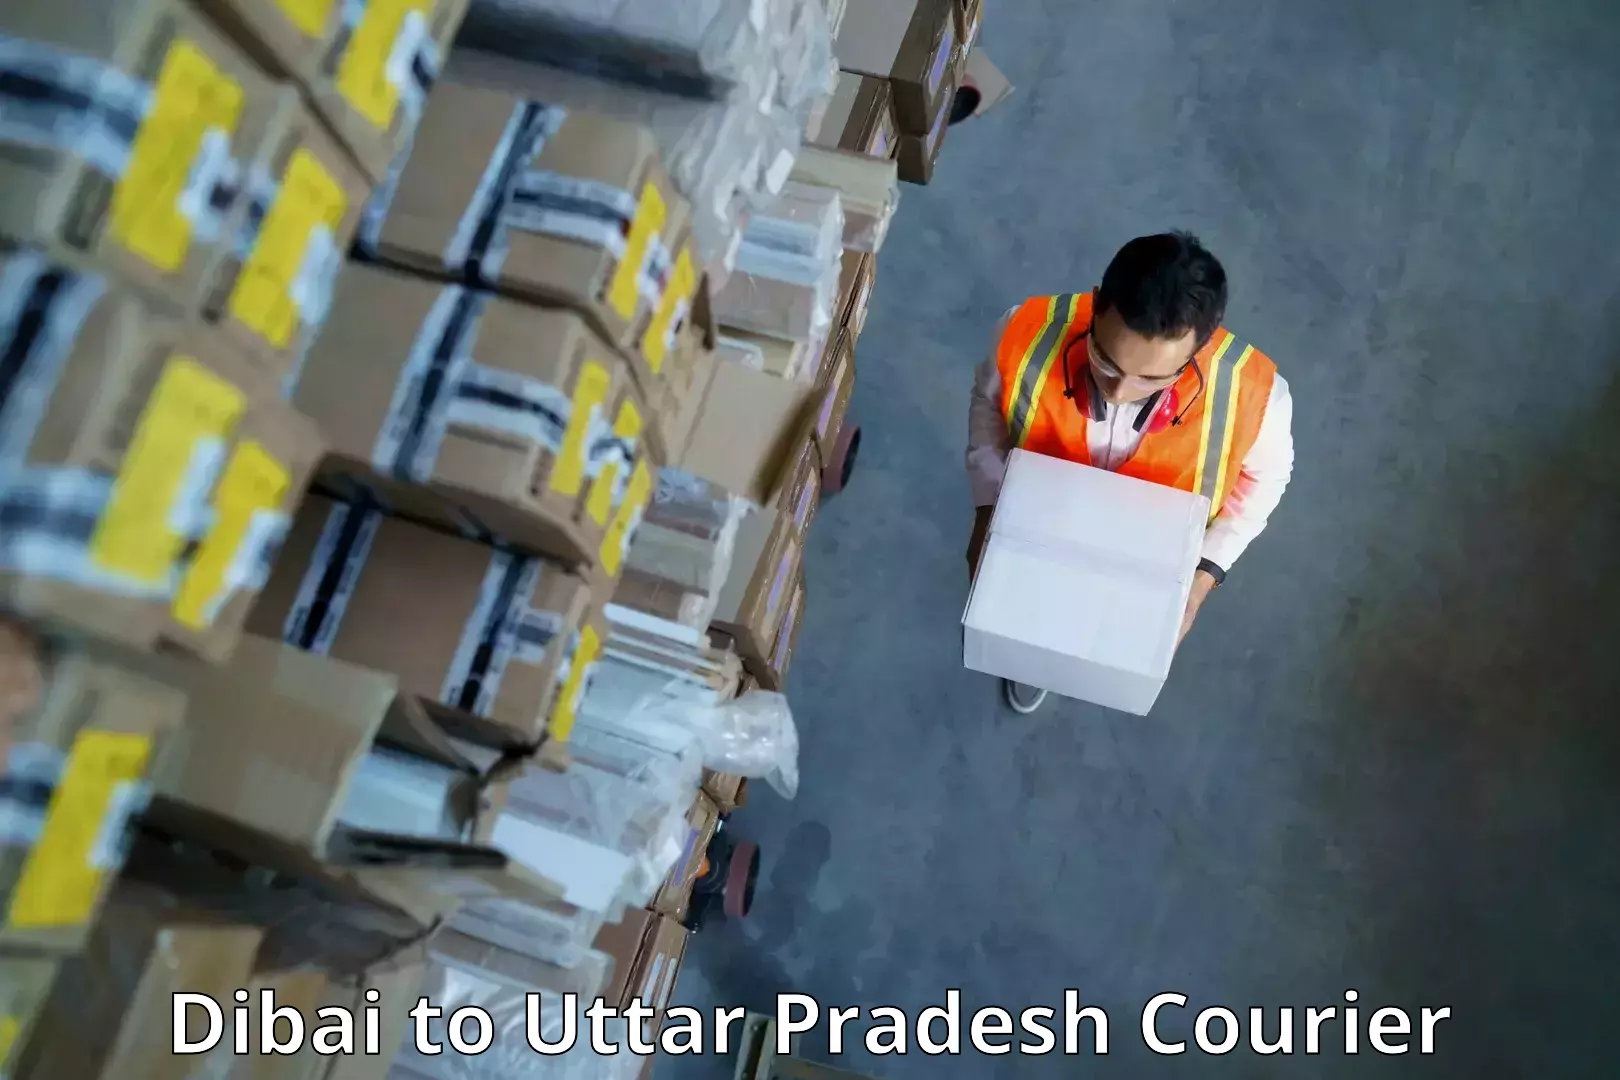 24-hour courier service Dibai to Dibai